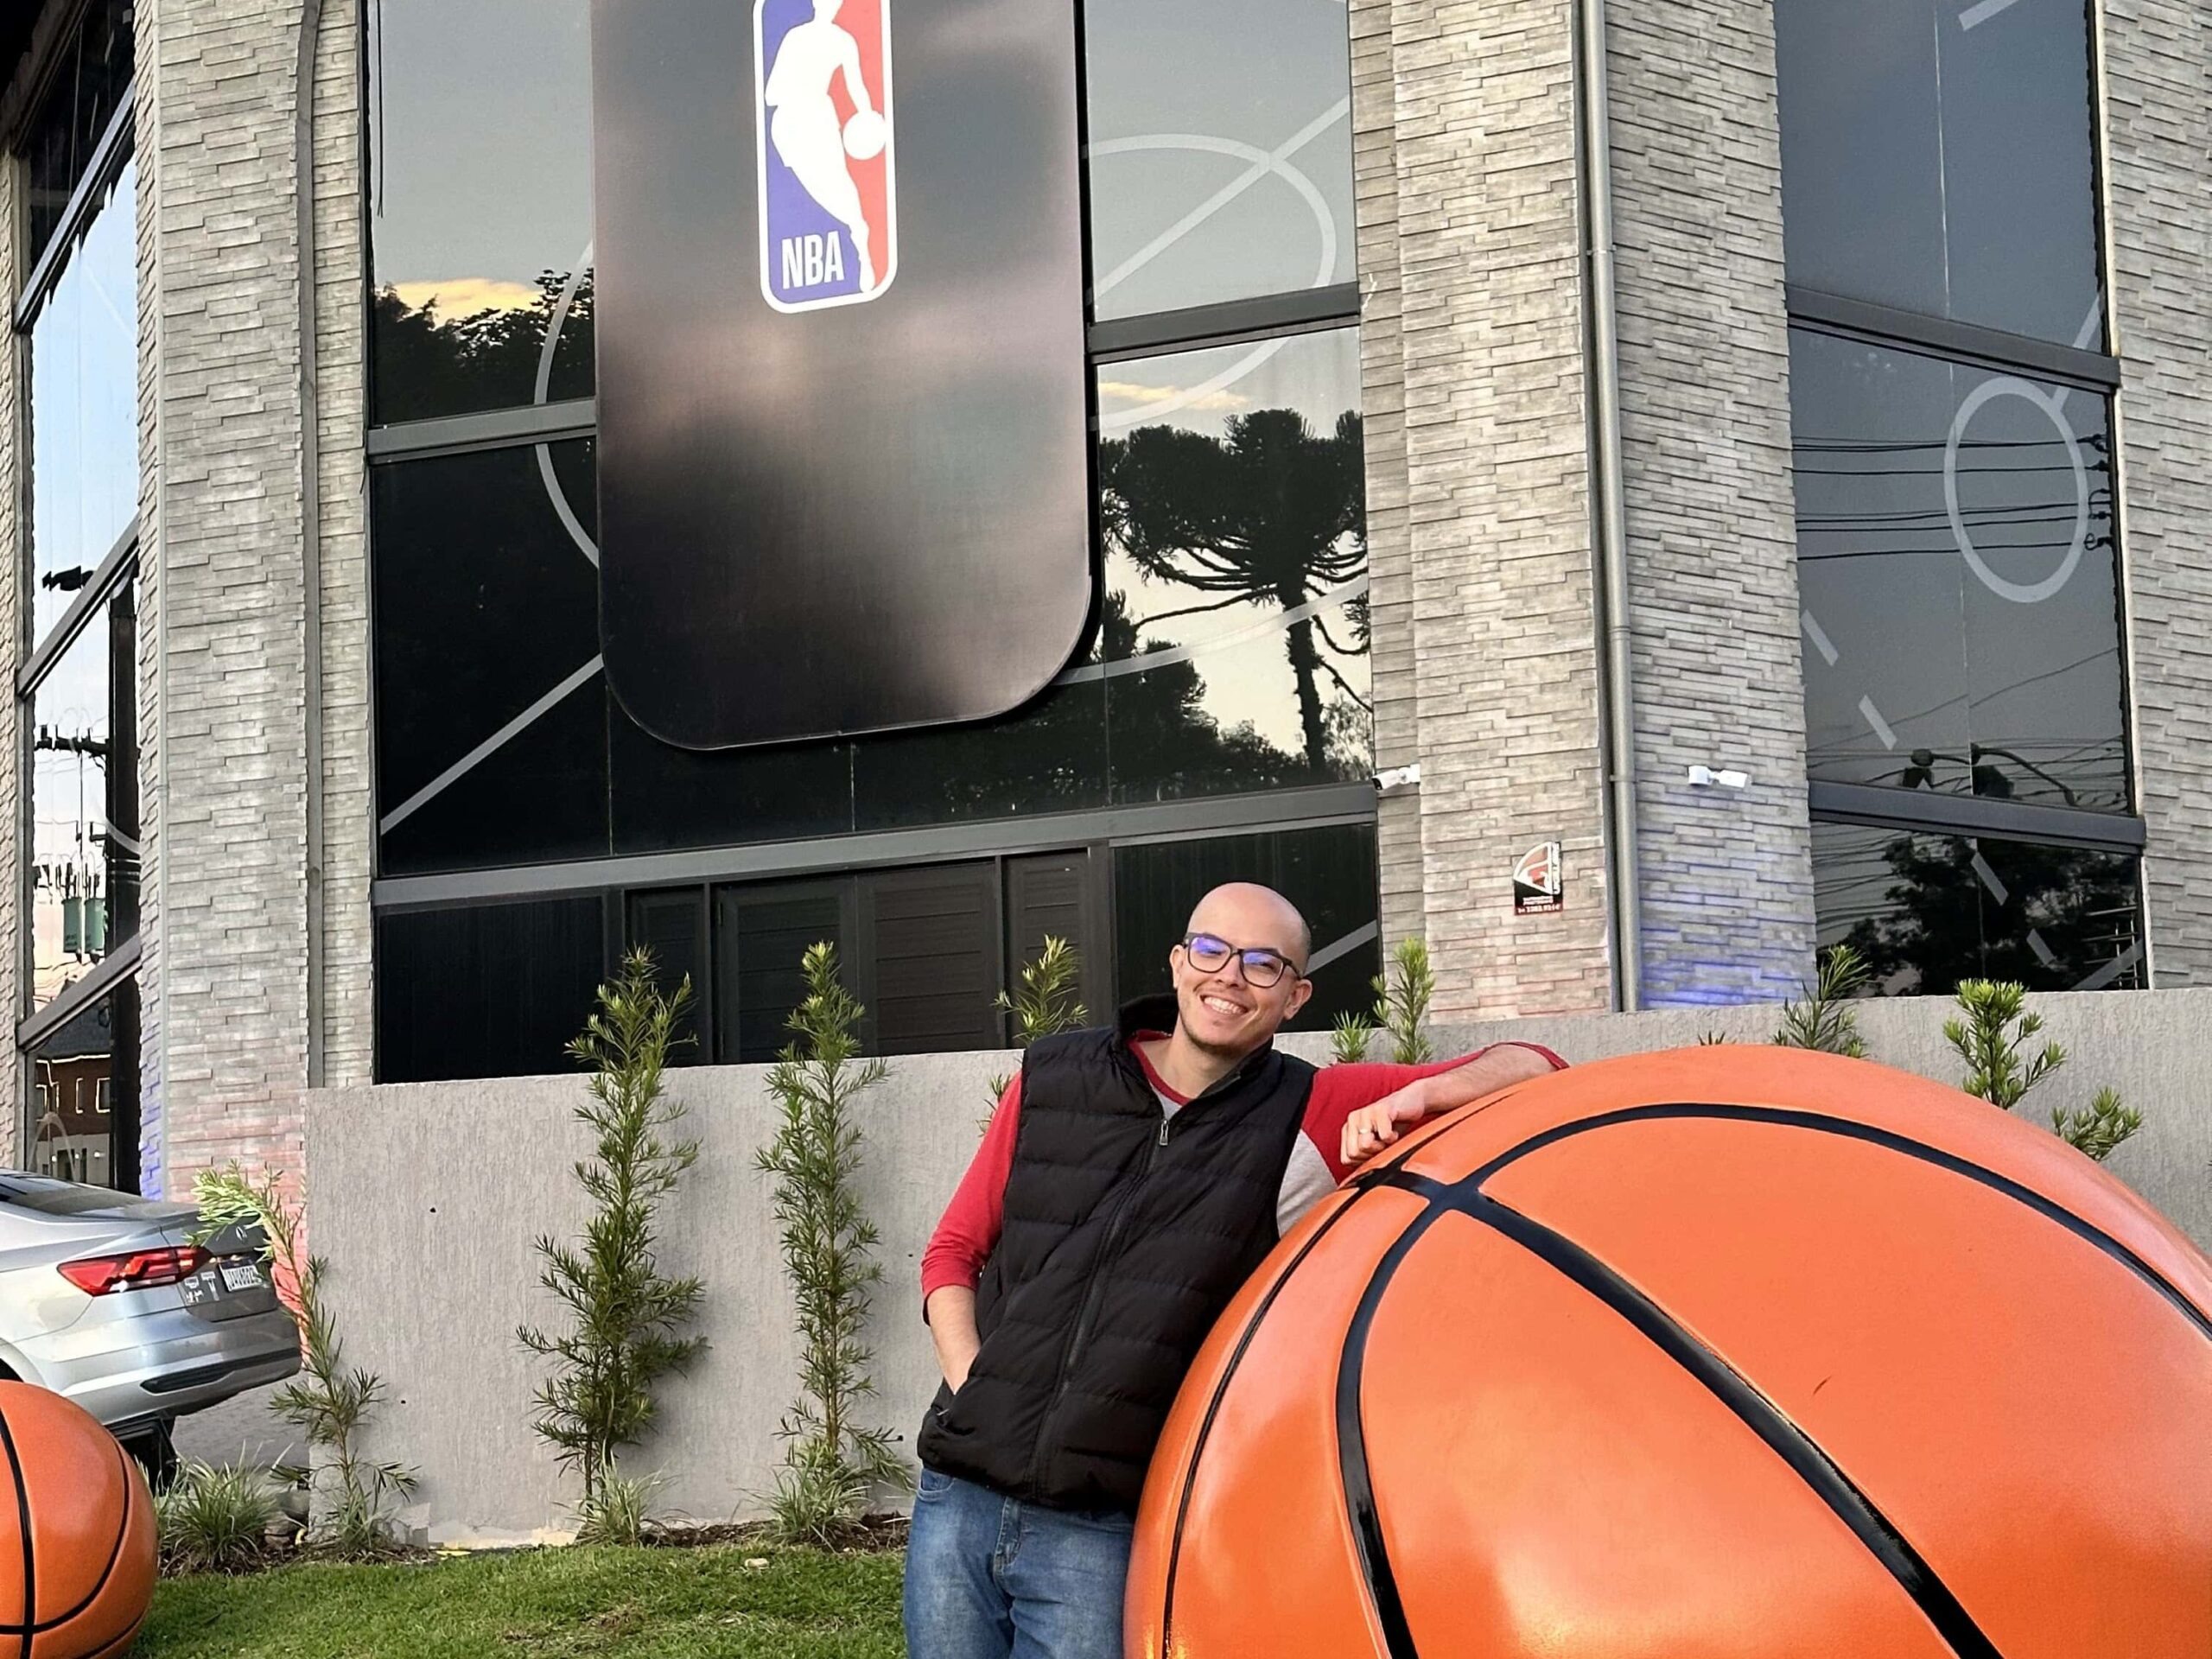 Rafa encostado em uma bola de basquete gigante no NBA Park